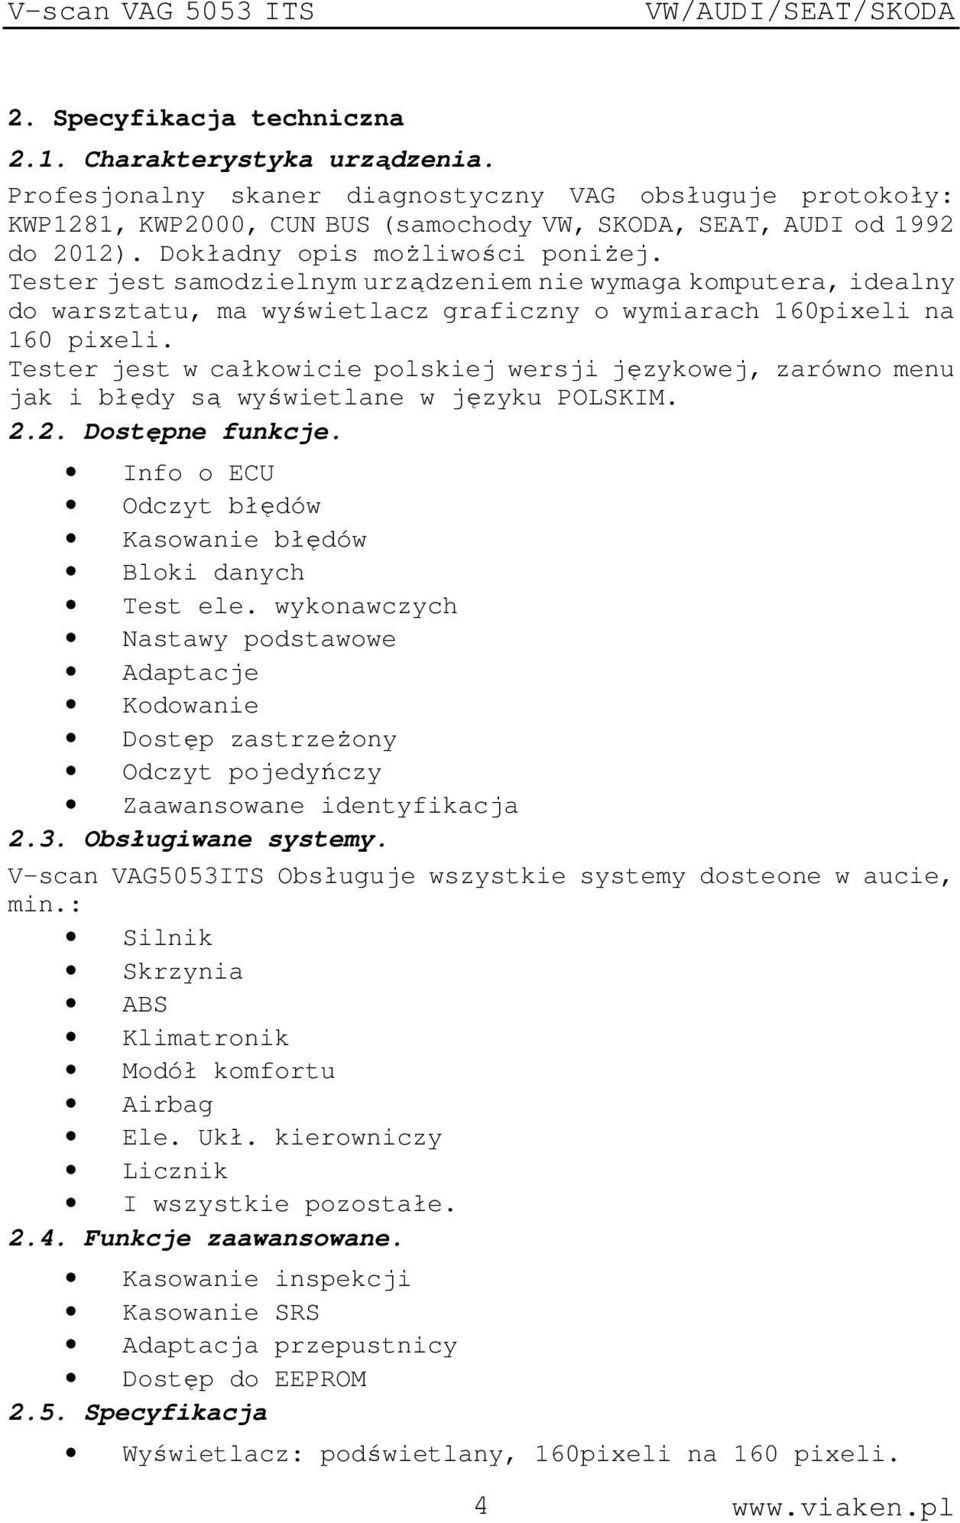 Tester jest w całkowicie polskiej wersji językowej, zarówno menu jak i błędy są wyświetlane w języku POLSKIM. 2.2. Dostępne funkcje. Info o ECU Odczyt błędów Kasowanie błędów Bloki danych Test ele.